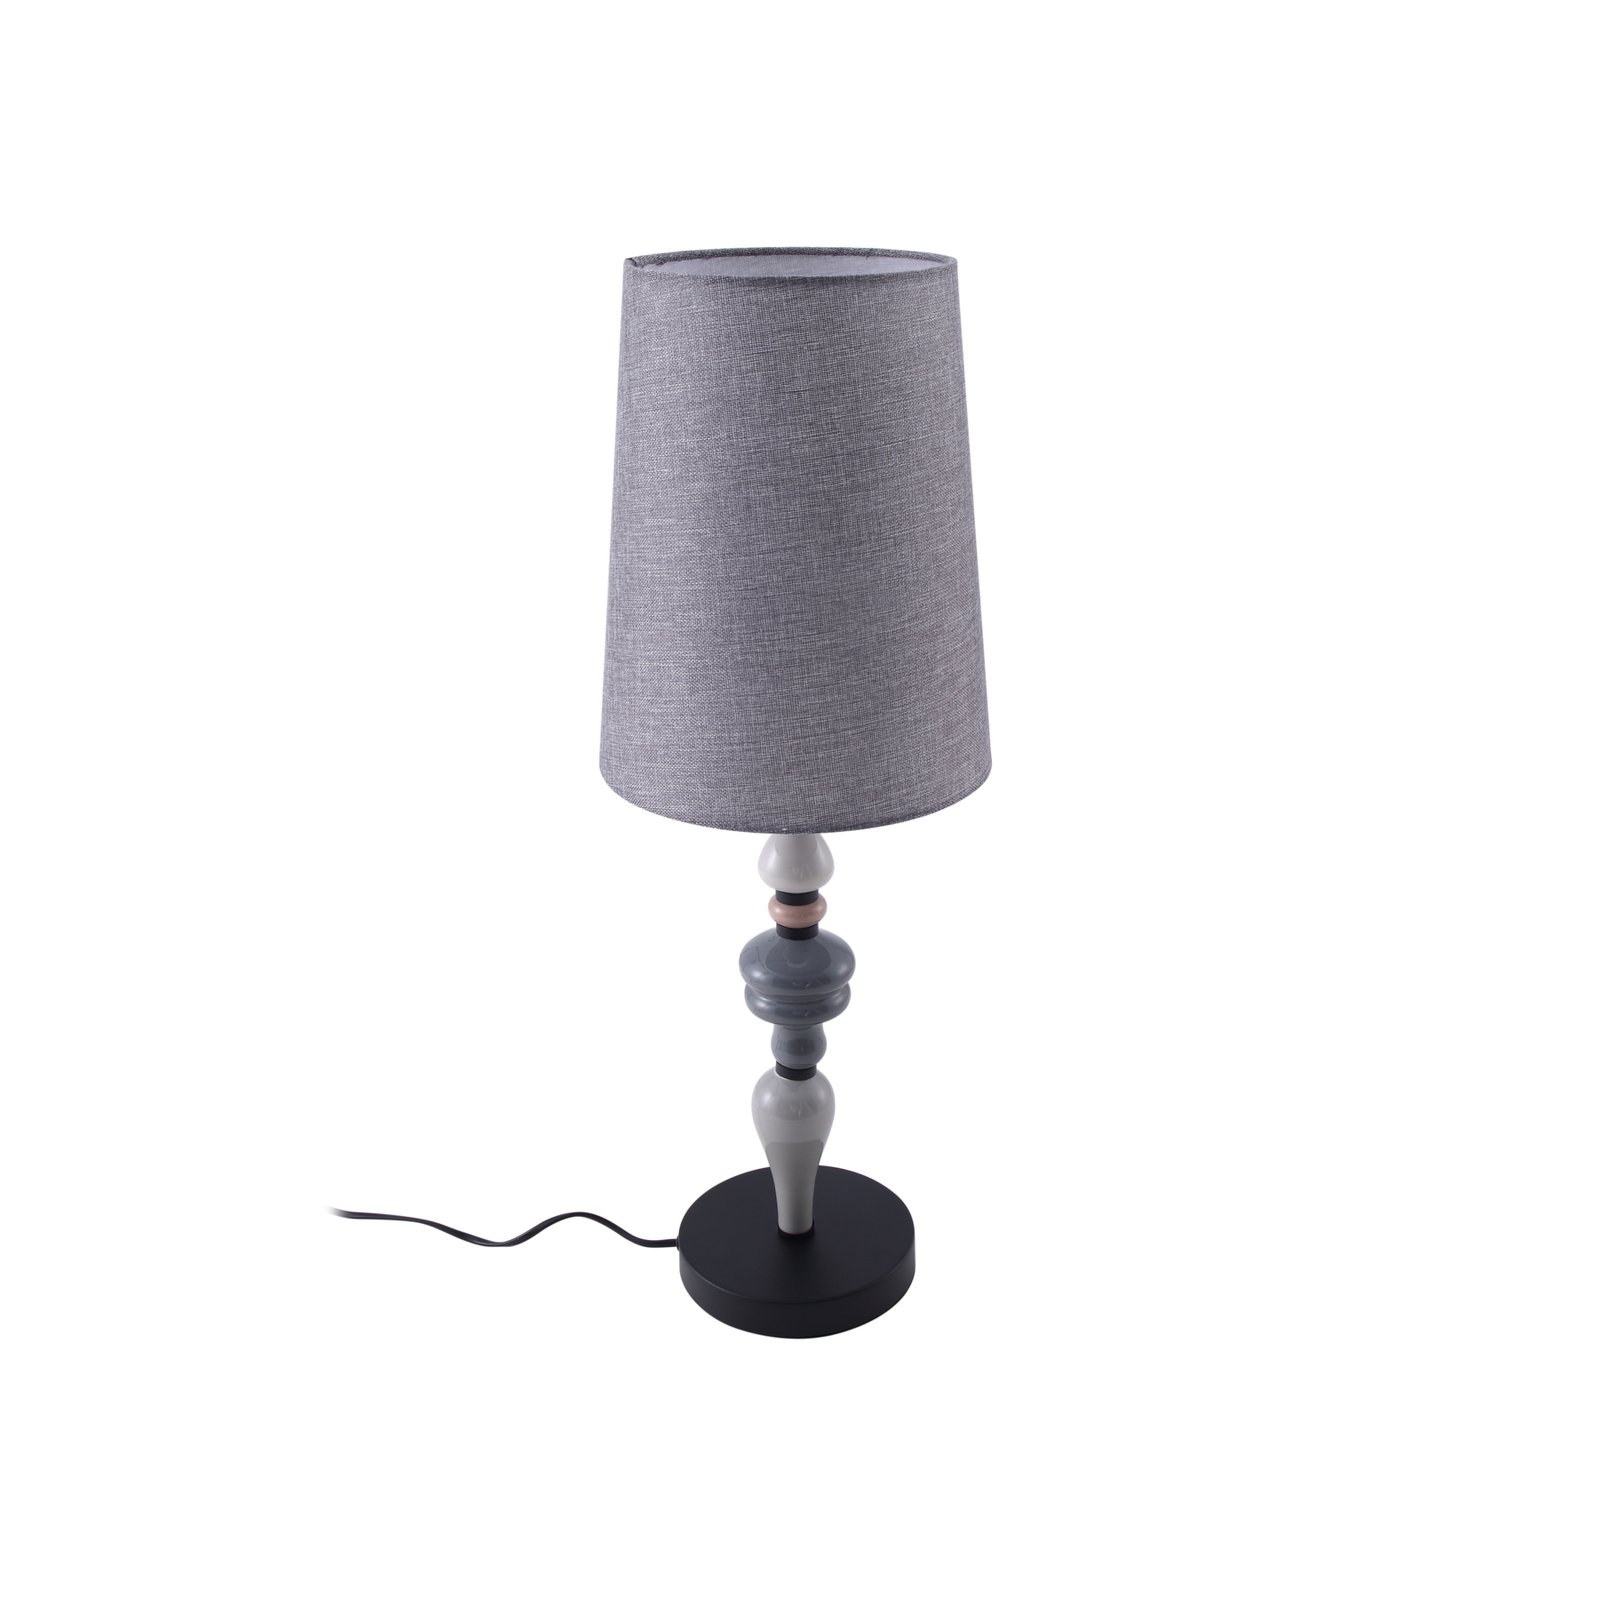 Stolní lampa Lindby Haldorin, šedá/černá, textil, 62 cm